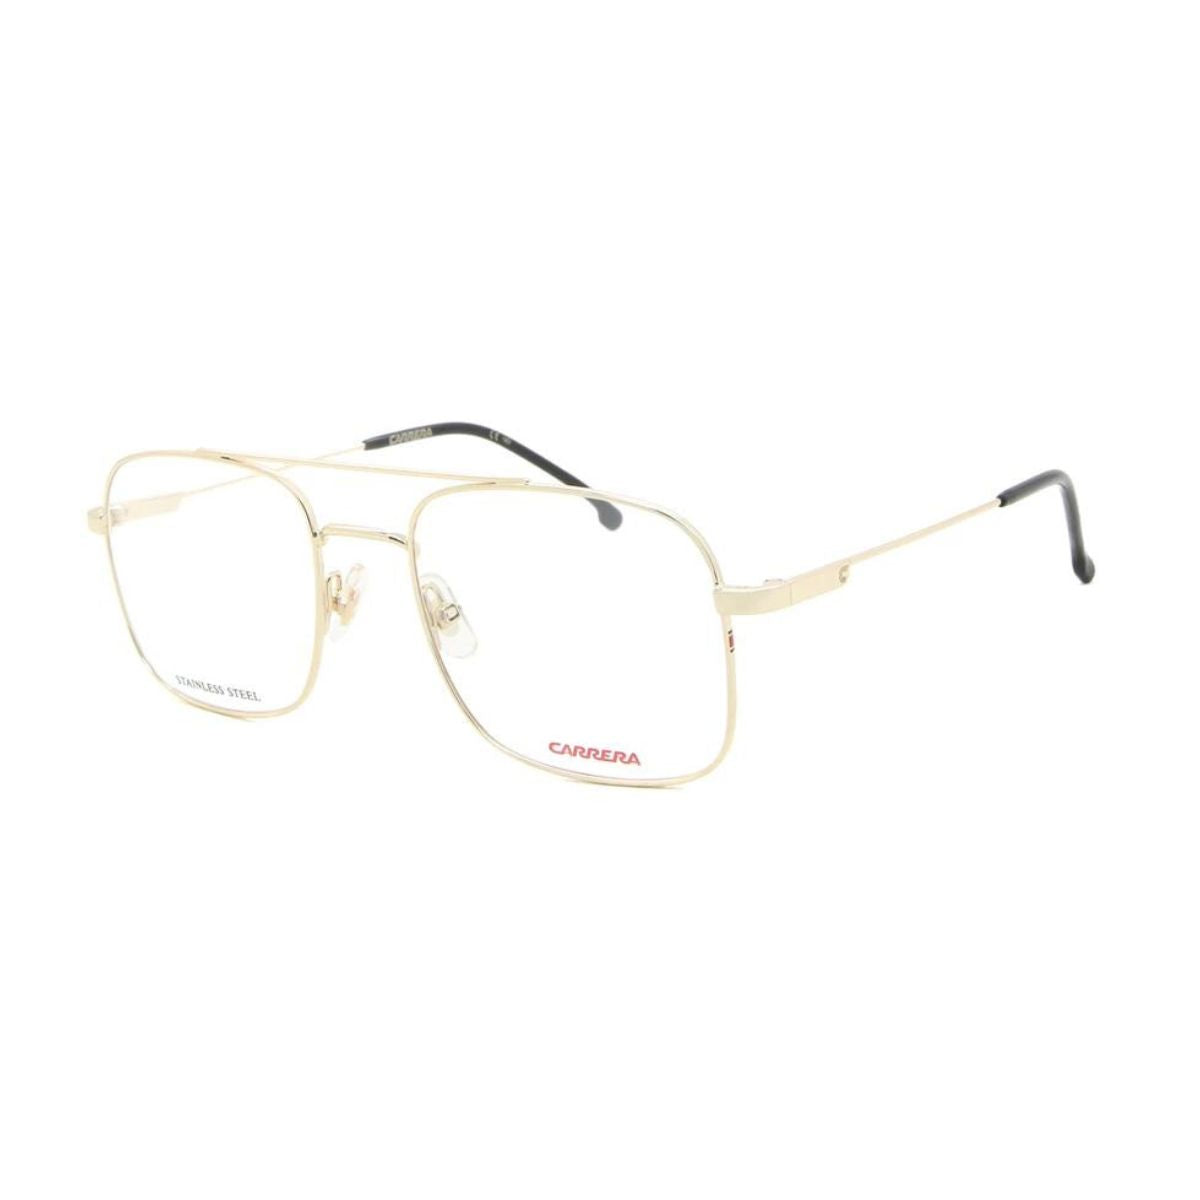 "Carrera 2010T J5G optical eyewear frame for men's at optorium"